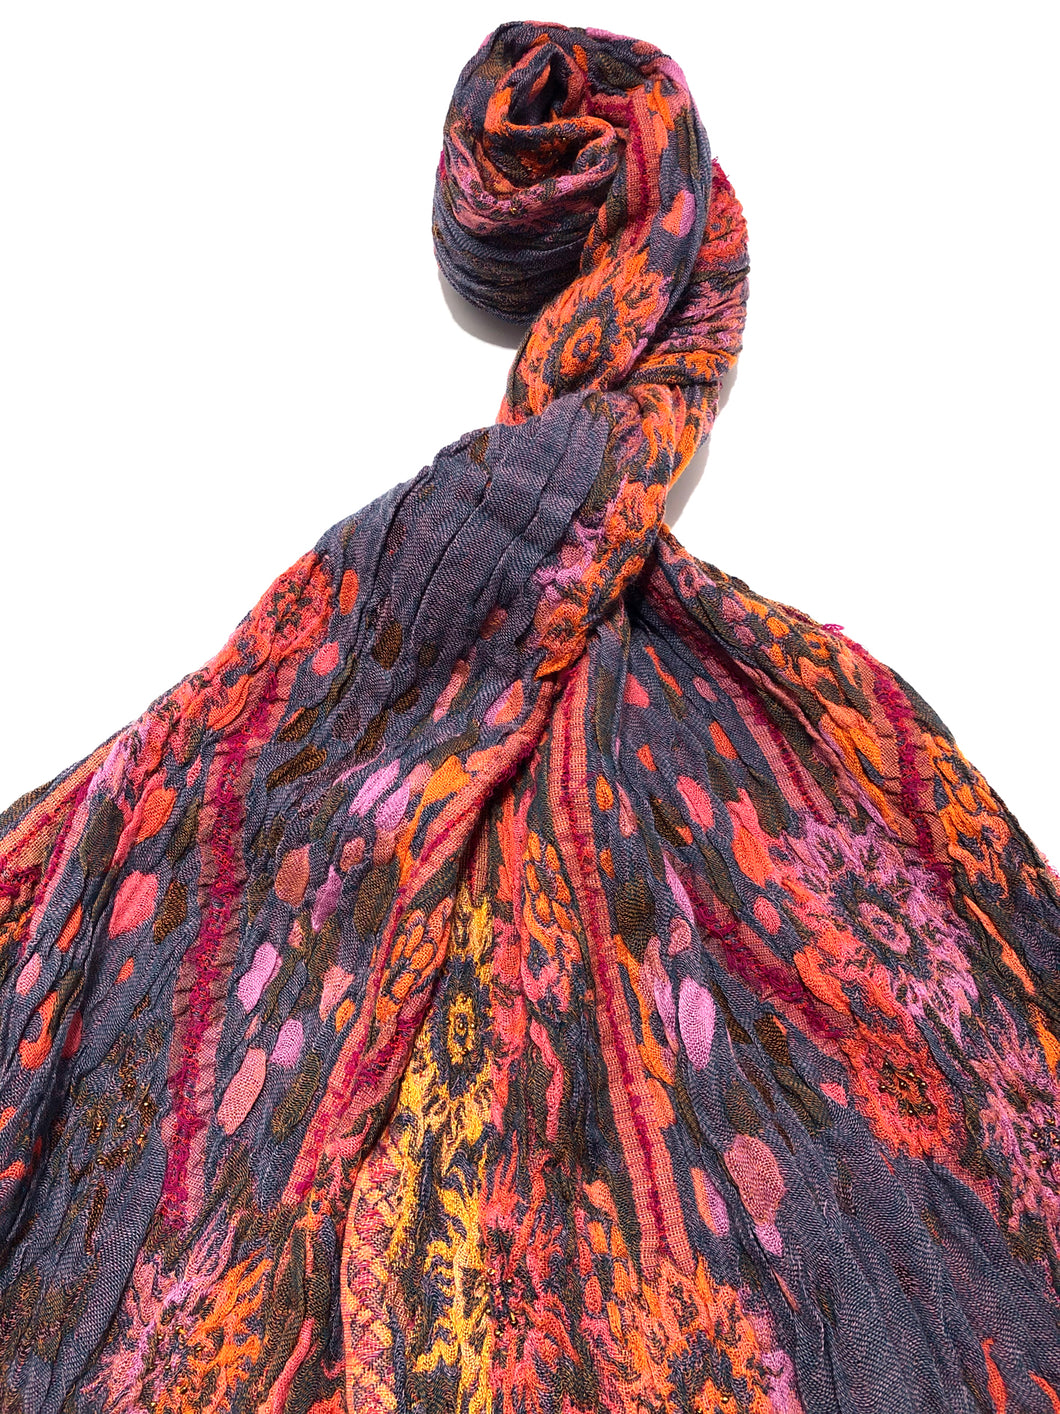 100% Wool Jacquard Embellished Pashmina Shawl ref-rflghwj0014